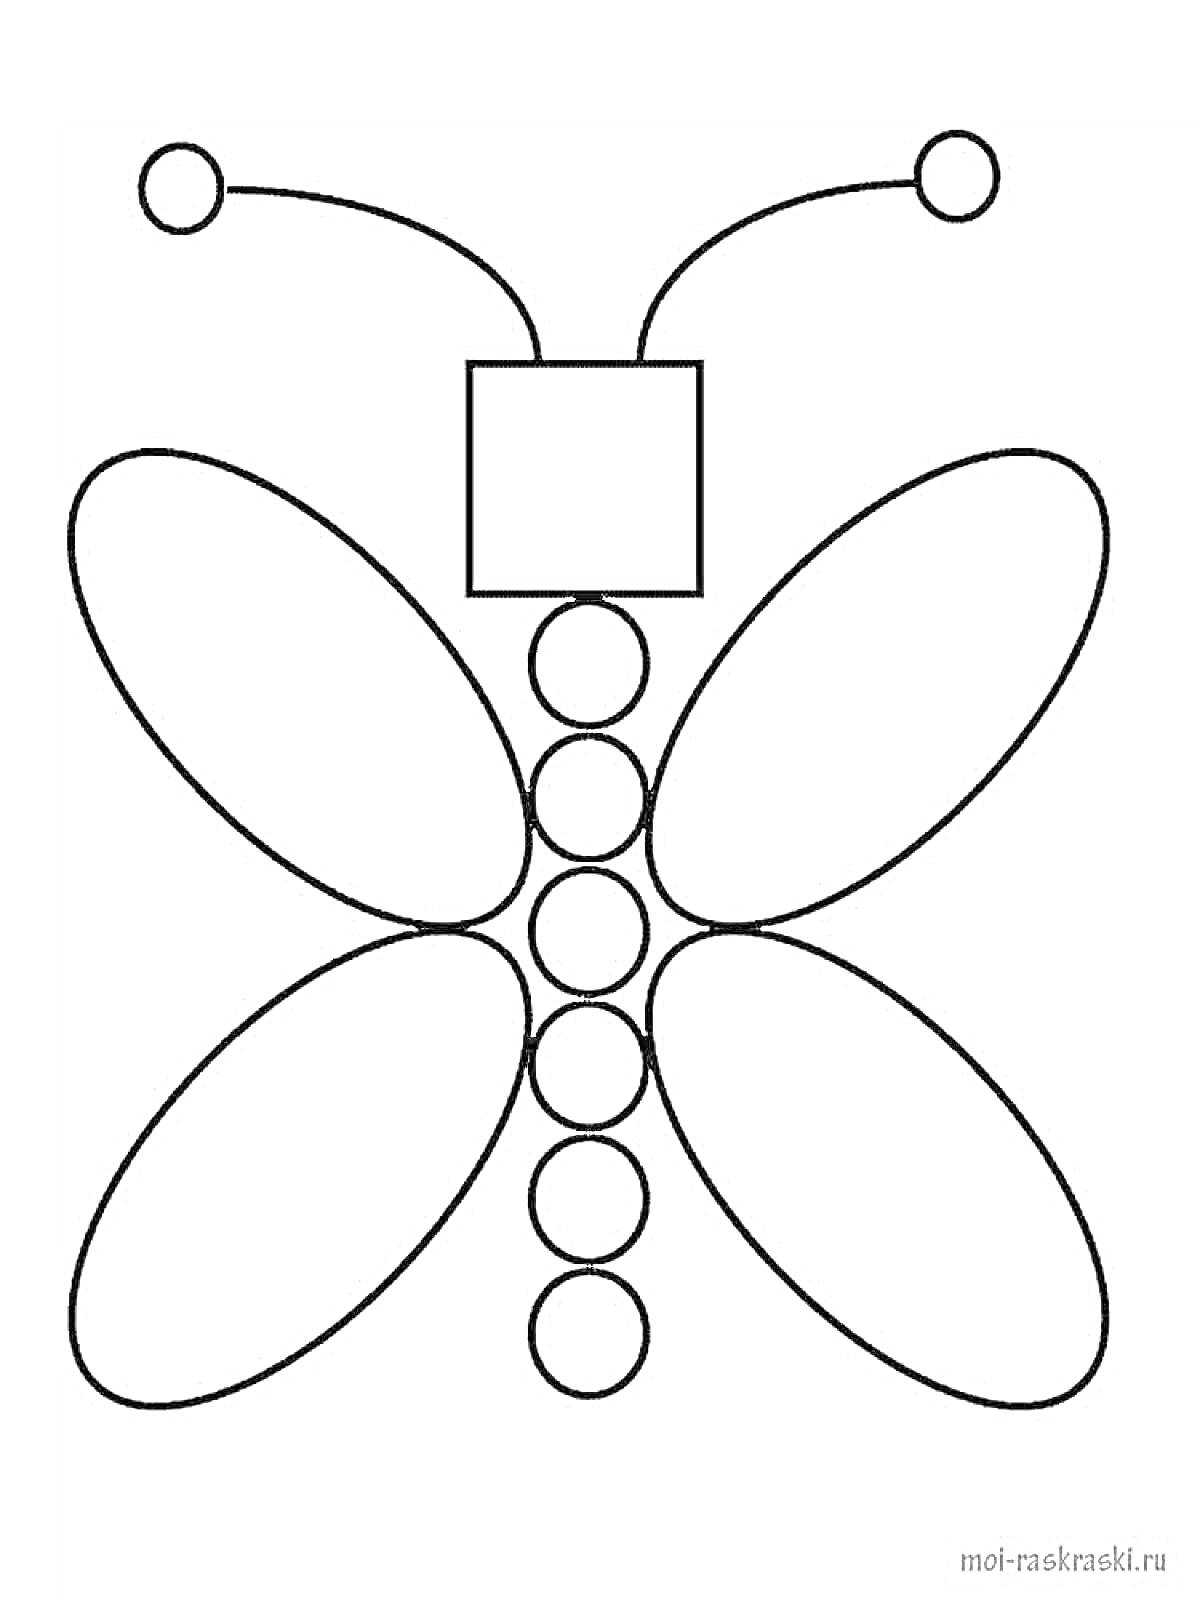 Раскраска Бабочка из геометрических фигур: круги, овалы, квадрат, линии